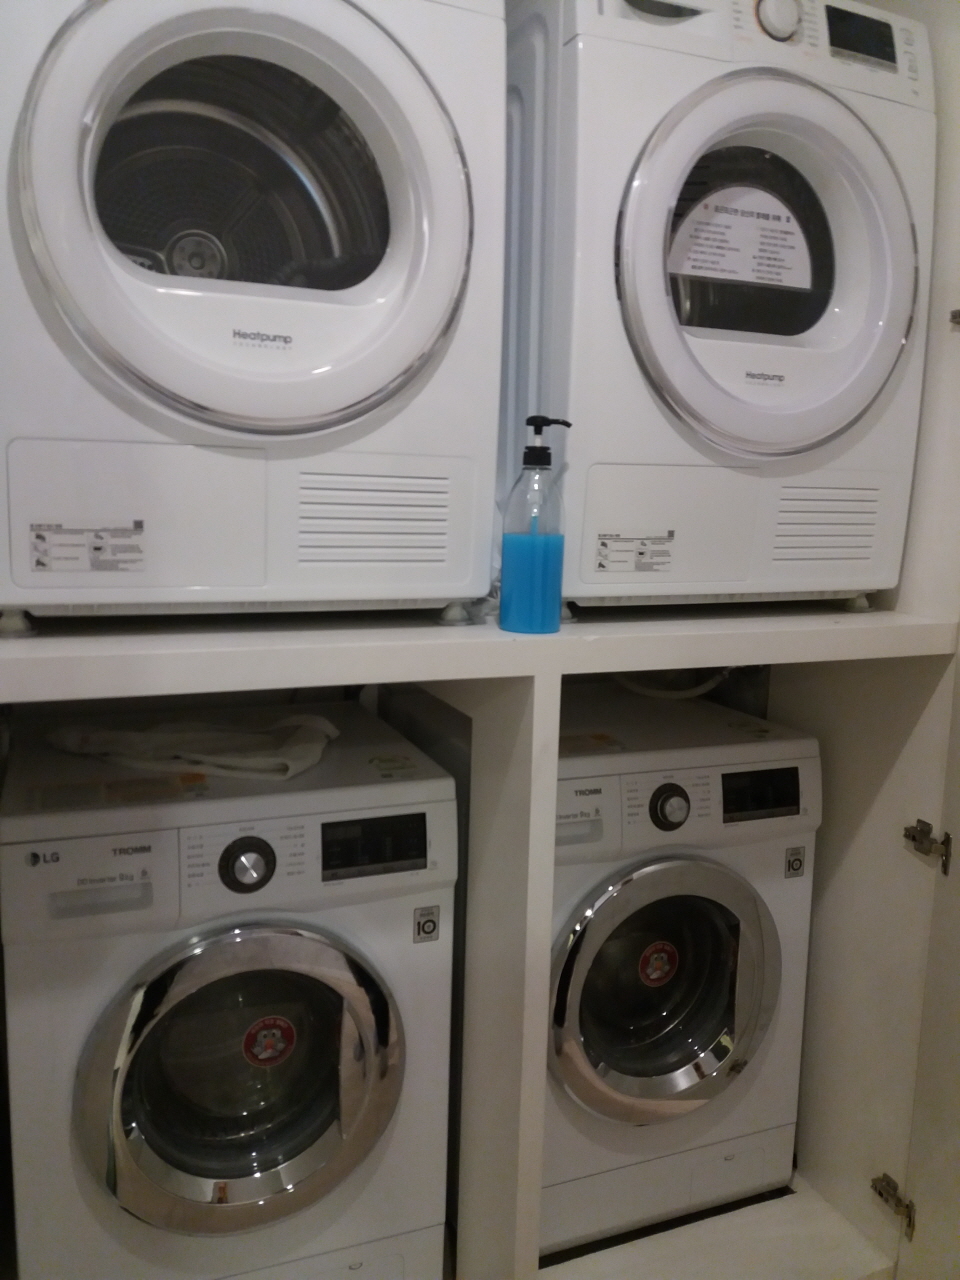 셰어하우스 복도에는 전기식 의류건조기(위), 세탁기(아래)를 두 대씩 놓았다.